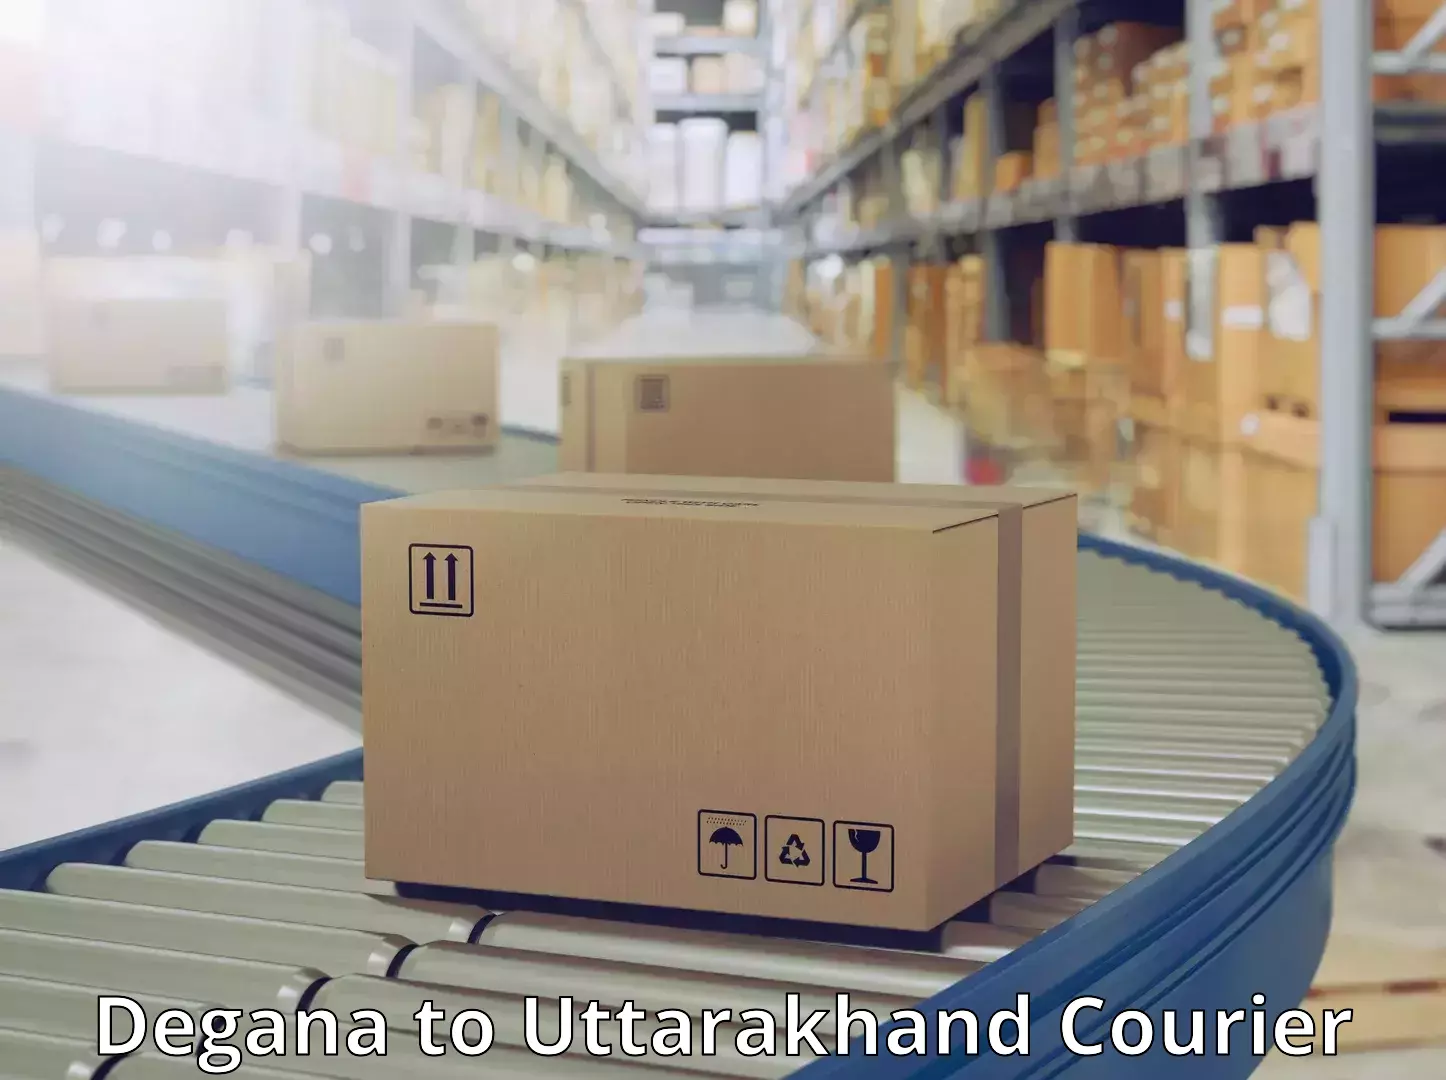 Modern courier technology Degana to Uttarakhand